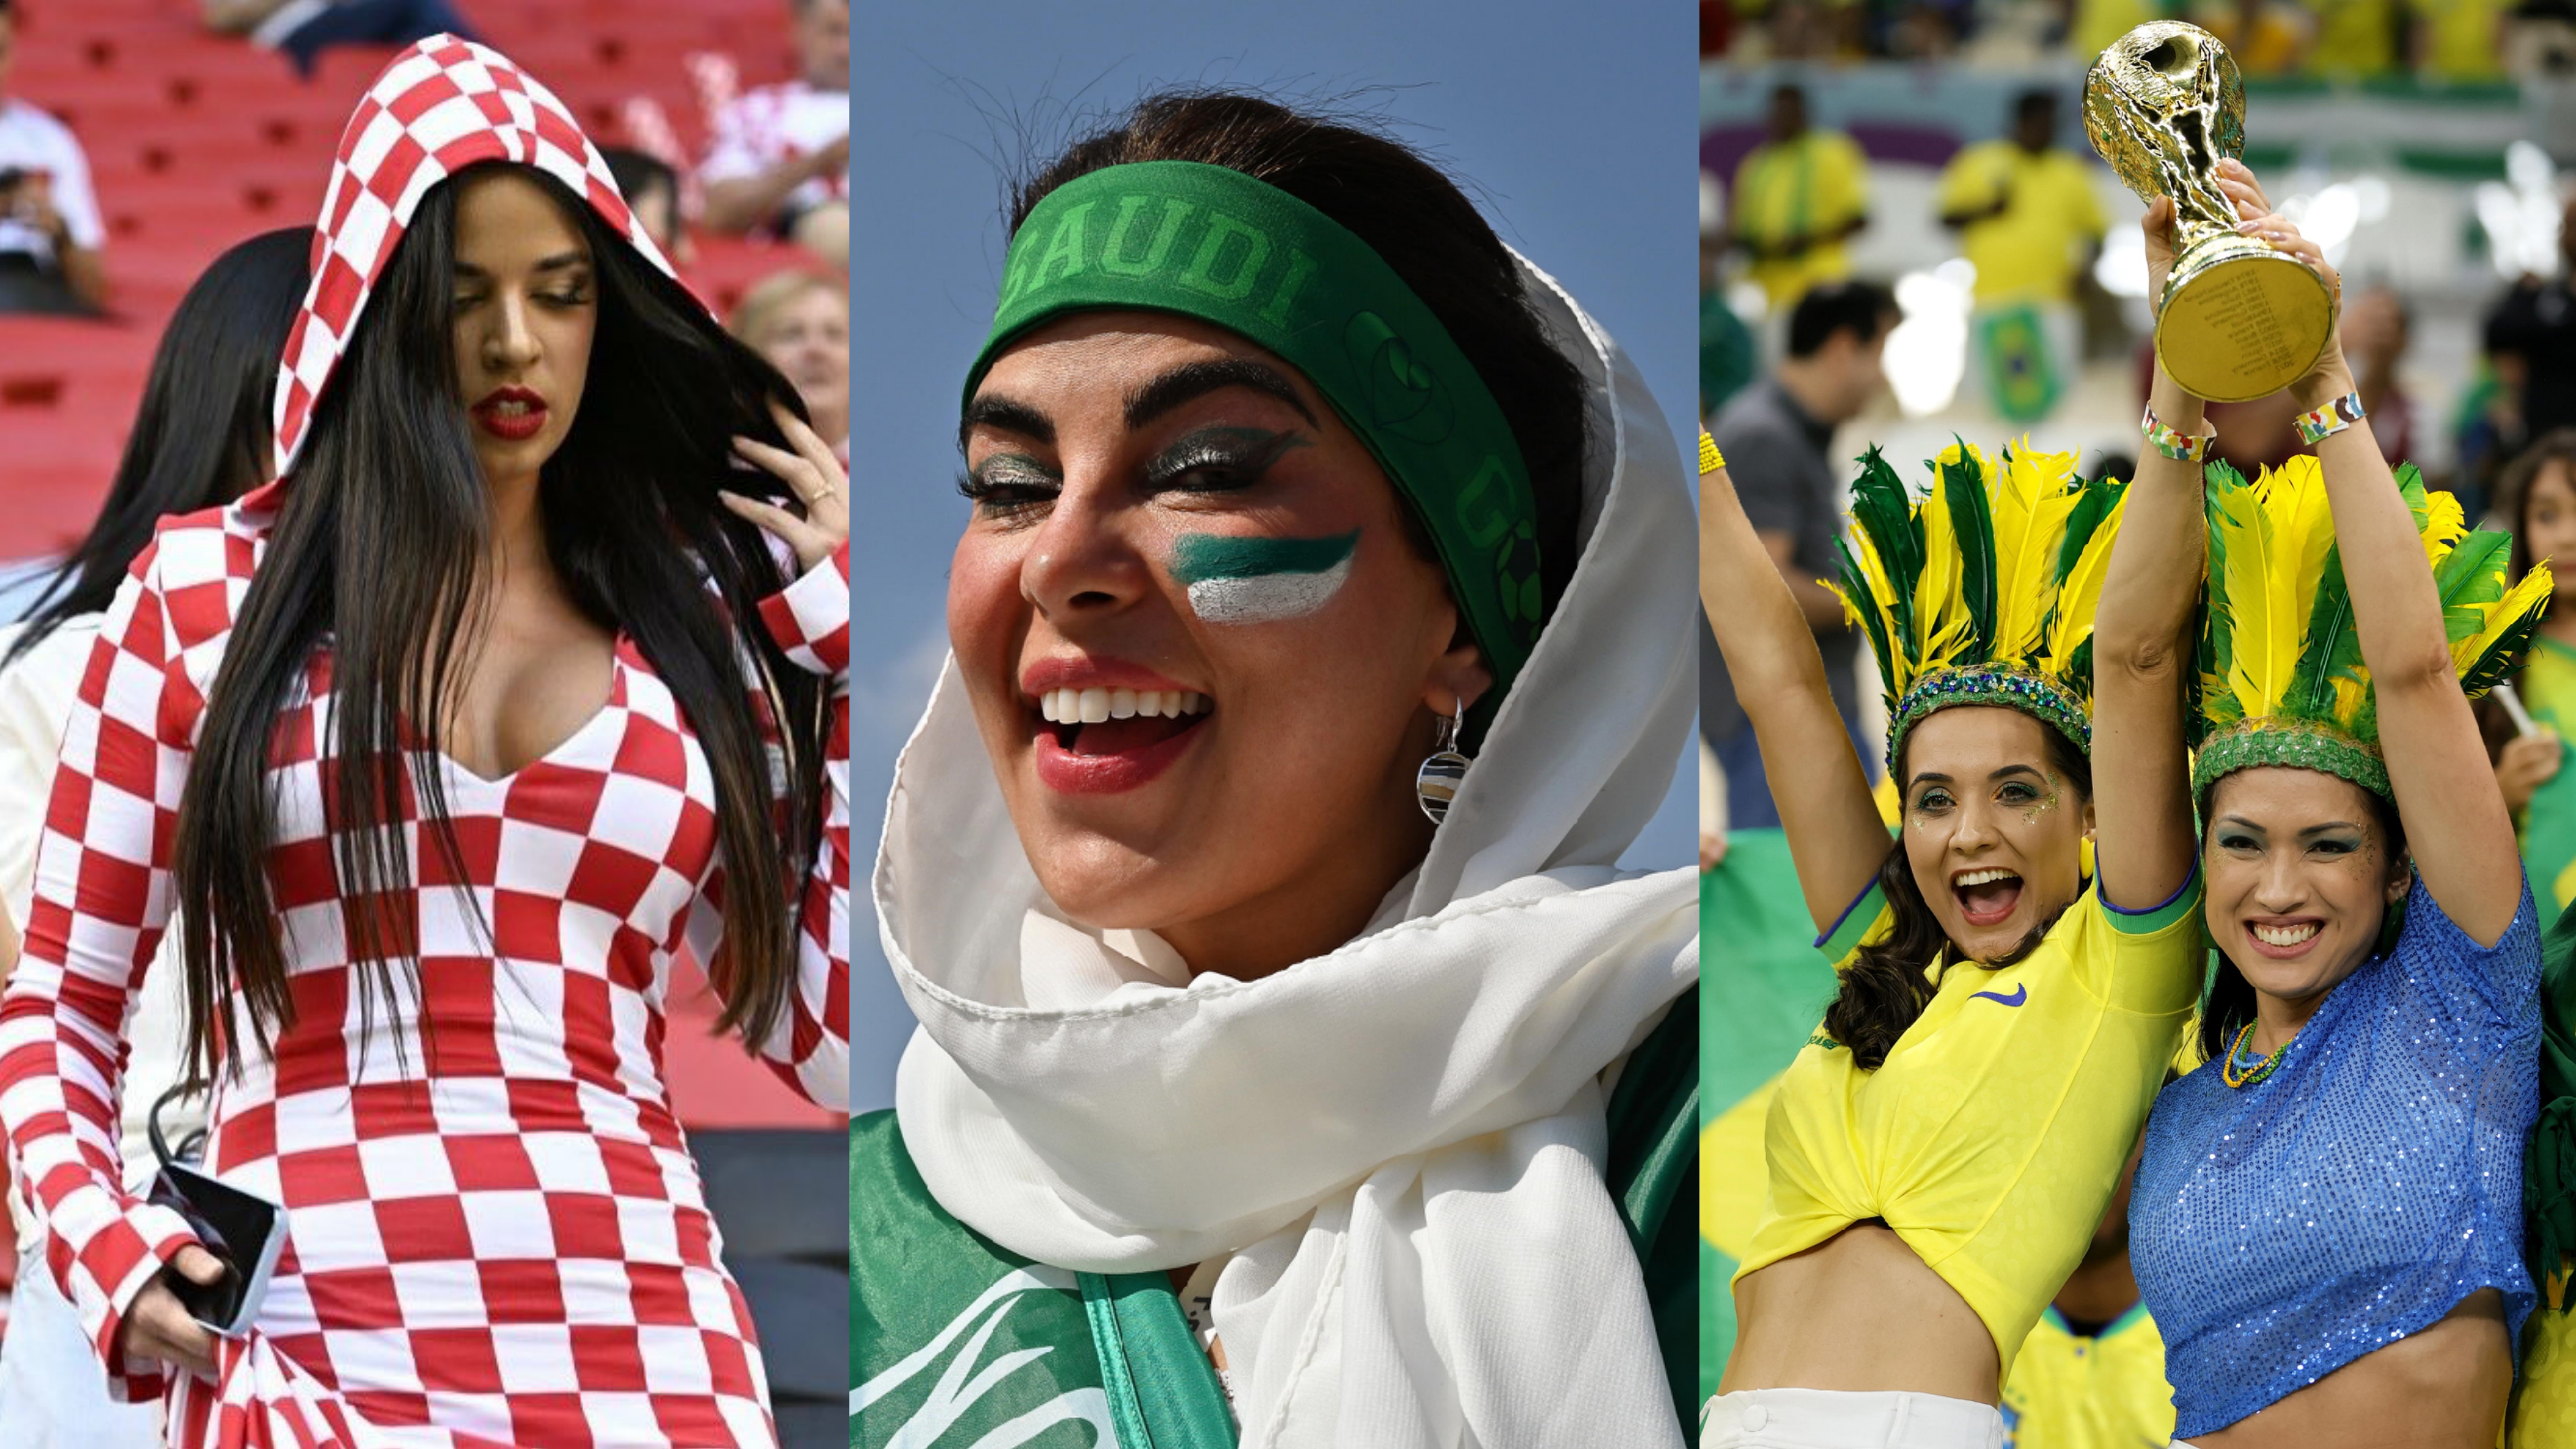 Mondiali Qatar 2022: le tifose più belle, scoppia la polemica sull'outfit della fan croata